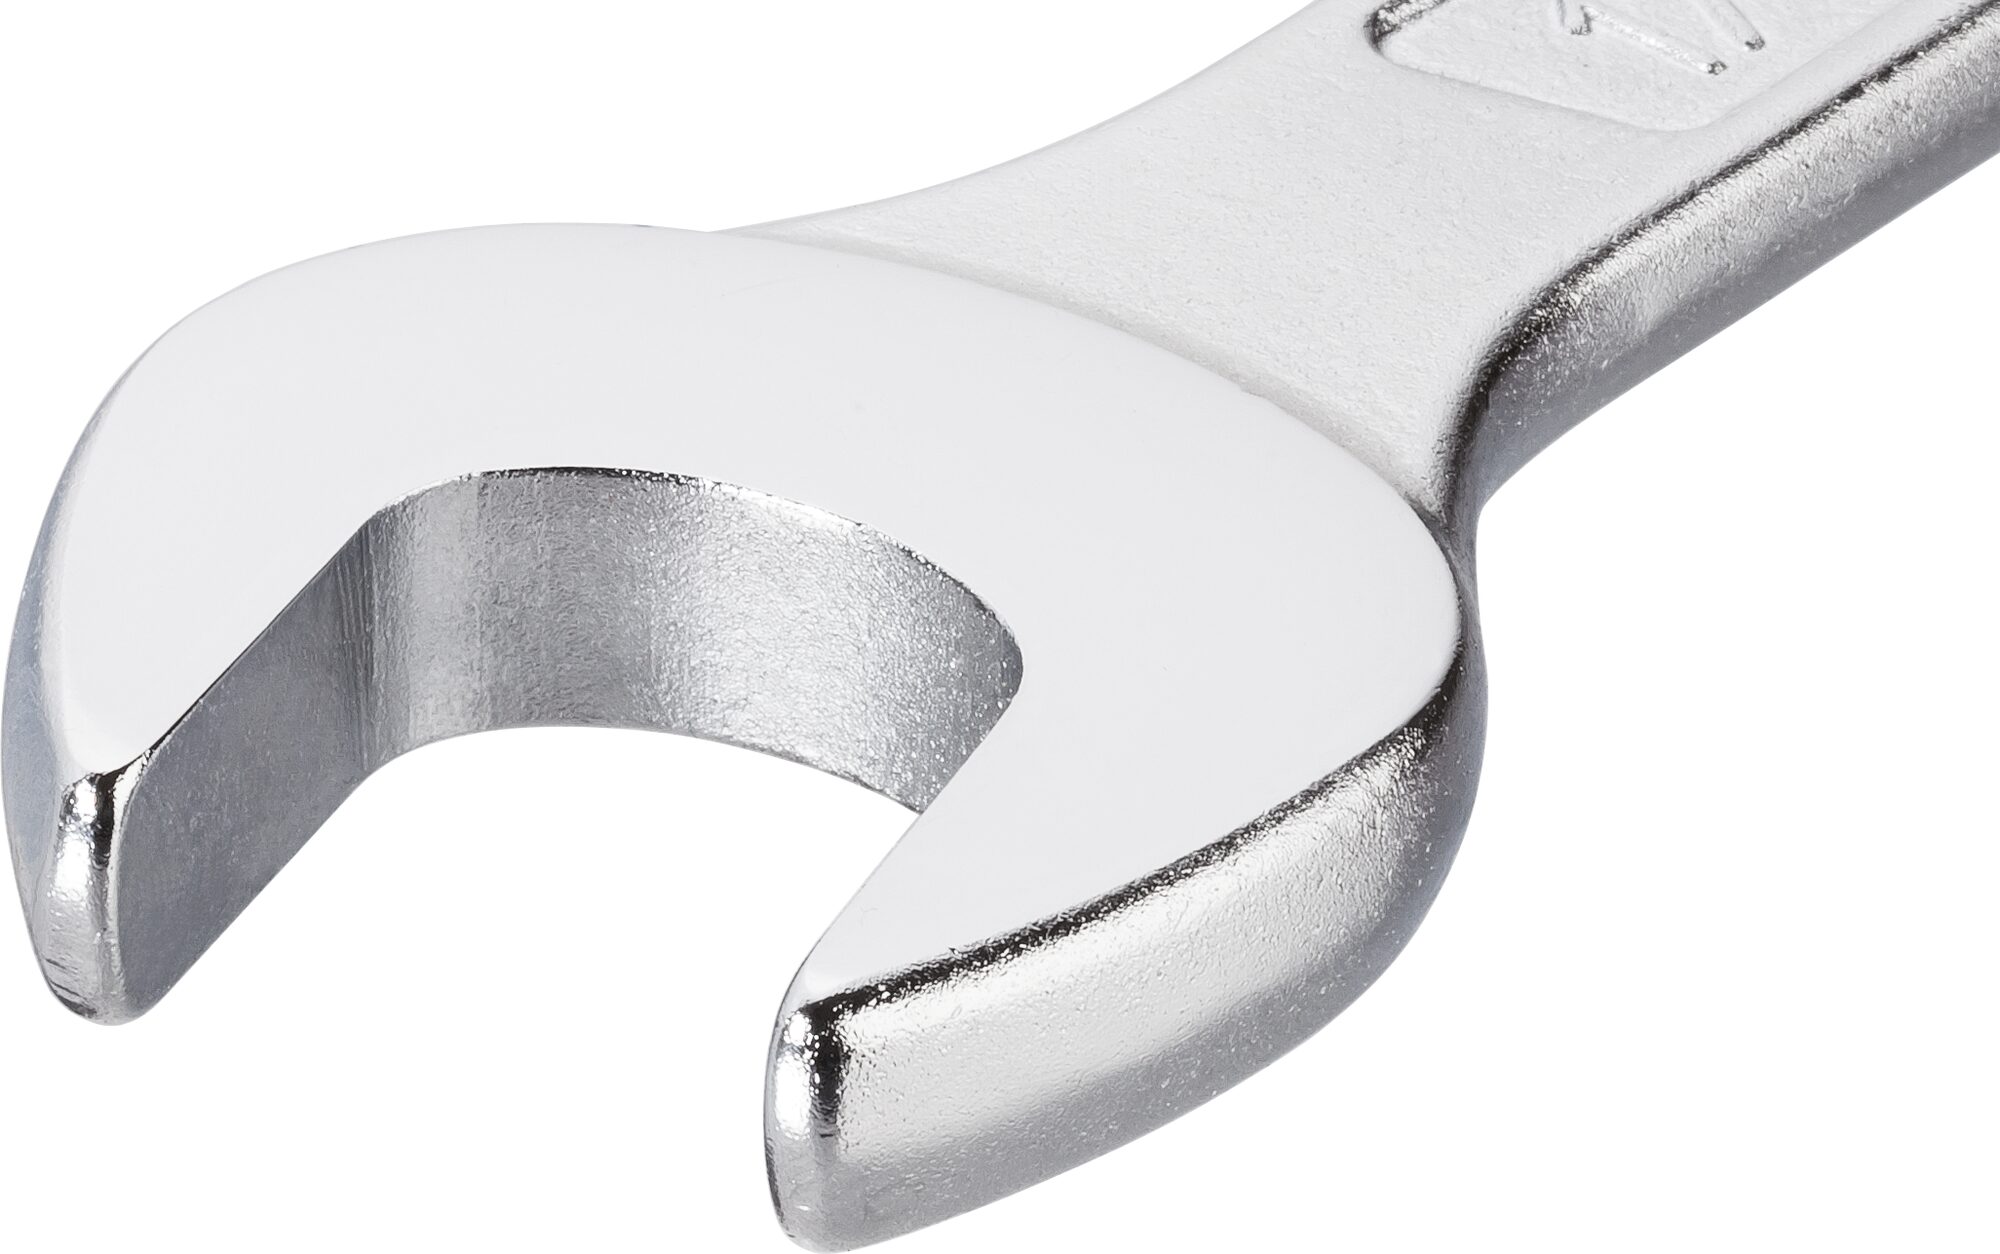 HAZET Ring-Maulschlüssel 600N-17 · Außen Doppel-Sechskant-Tractionsprofil · 17 mm